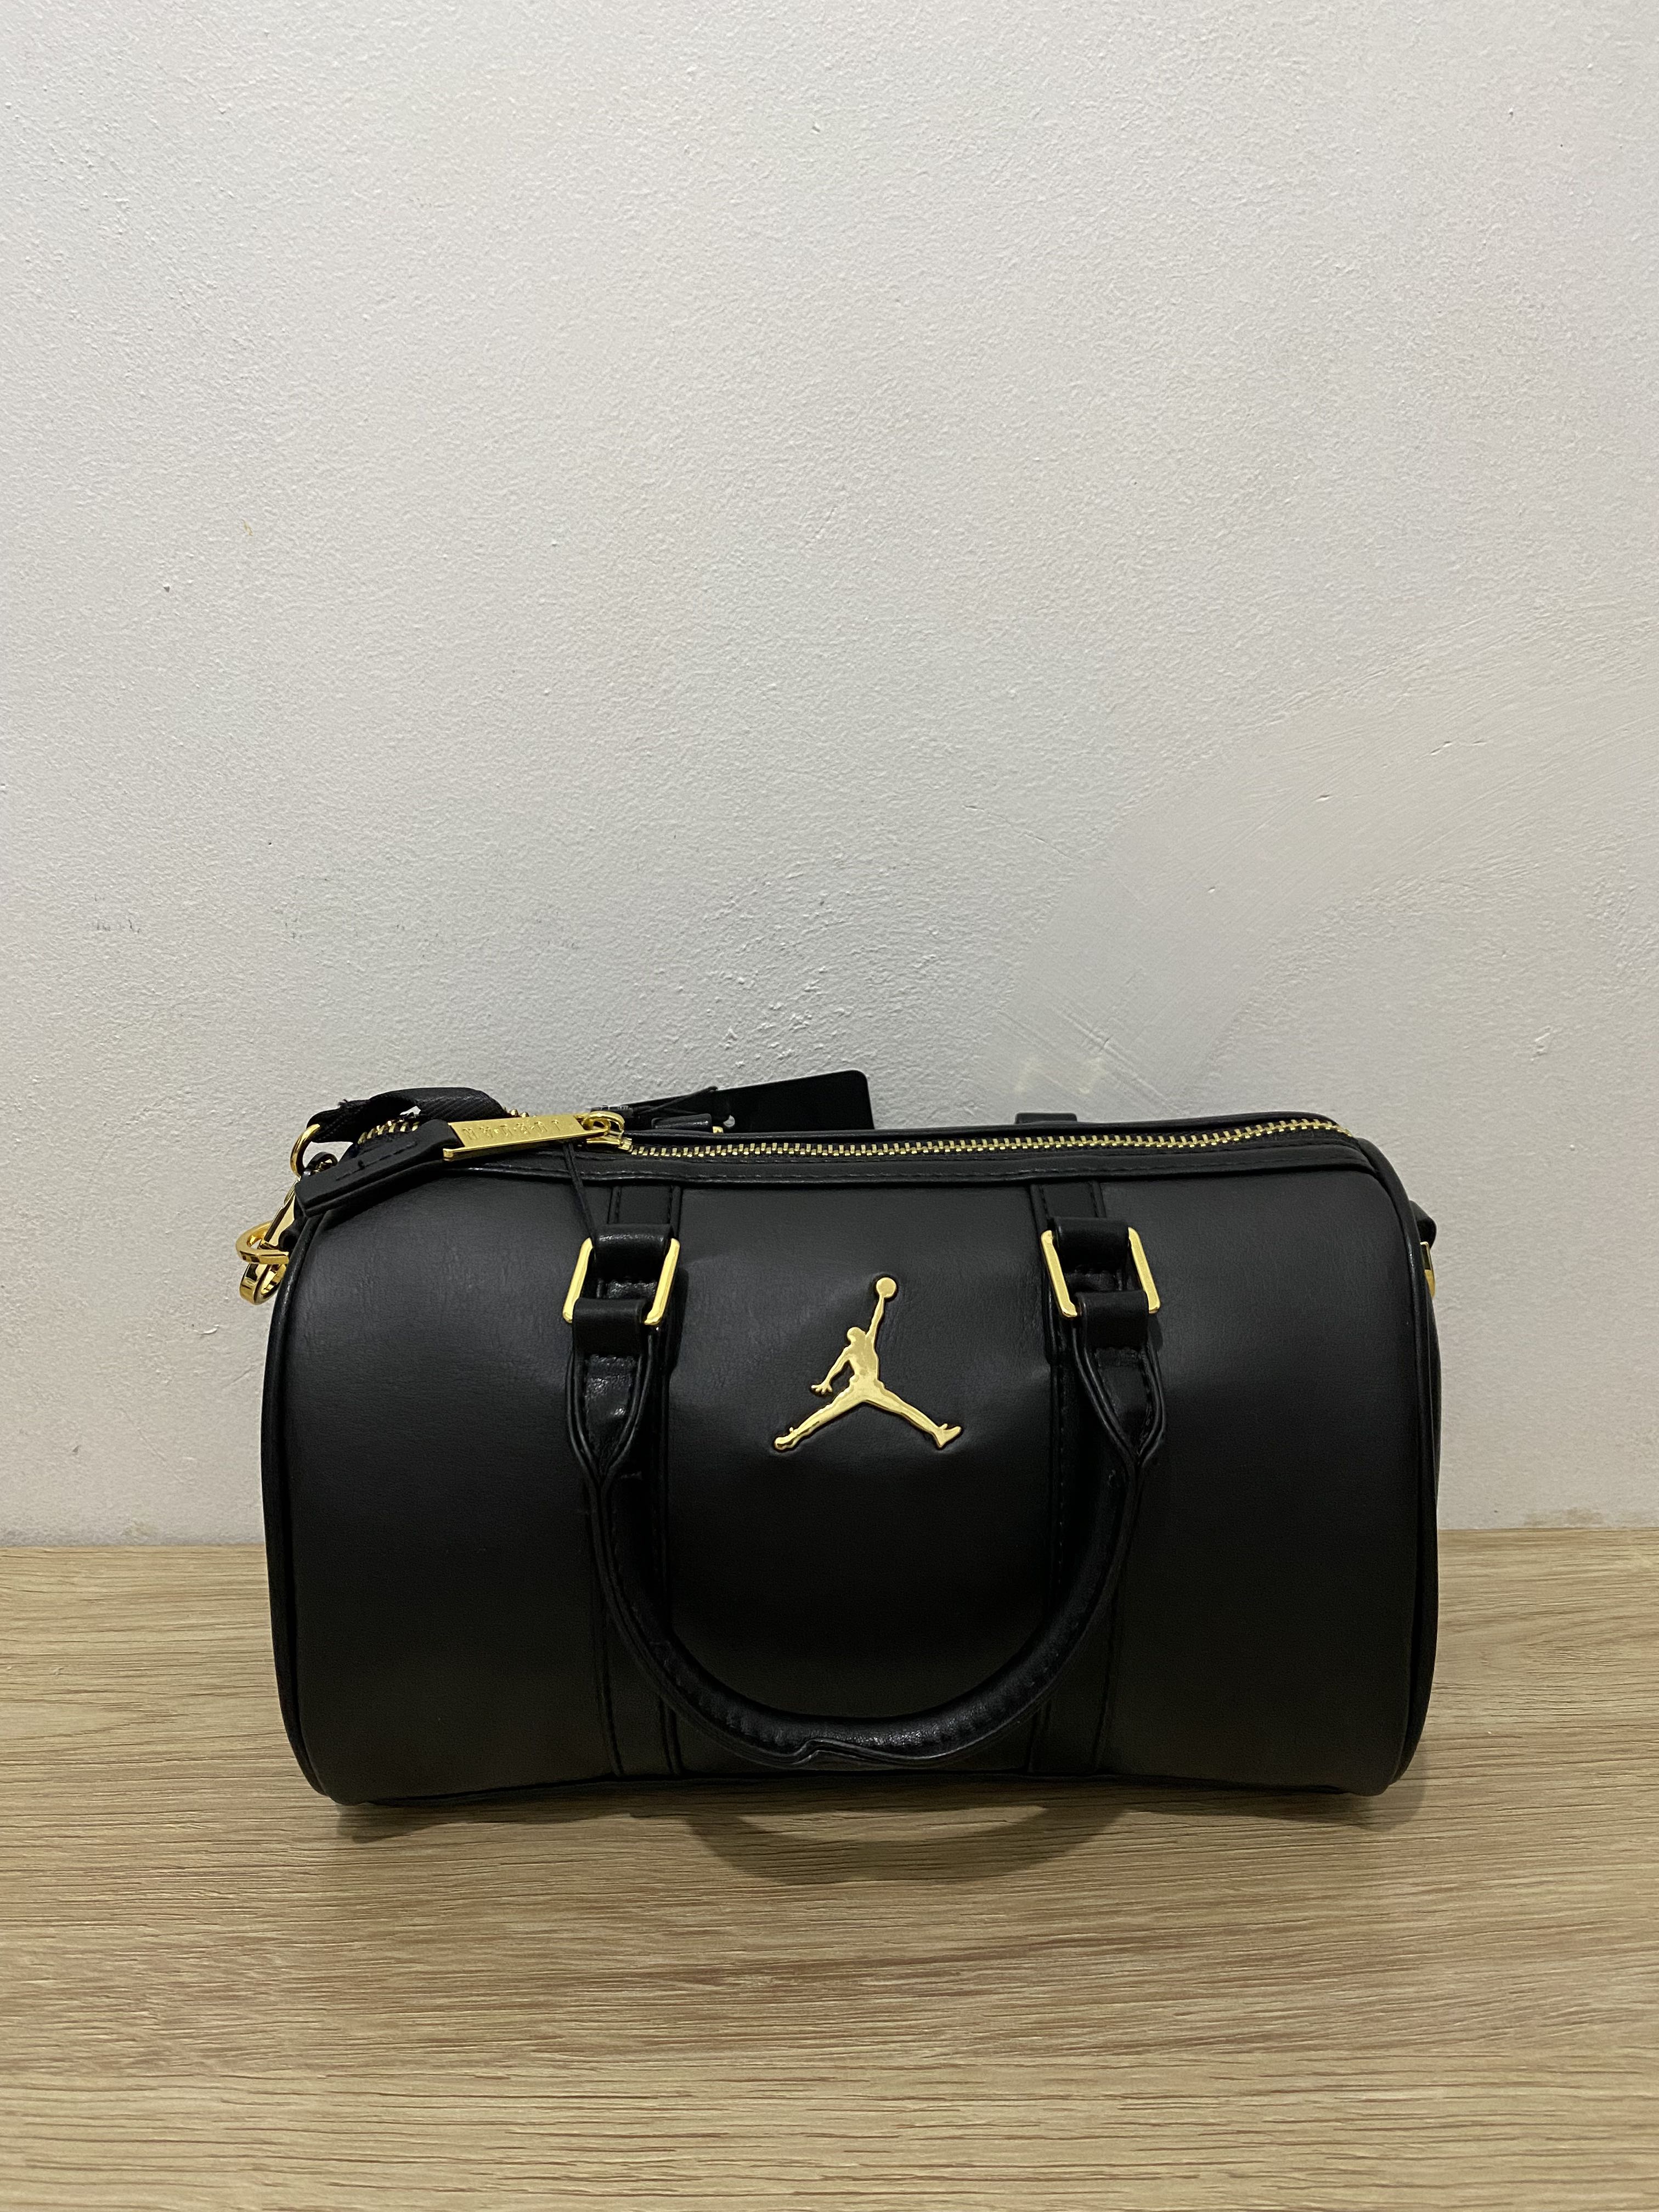 black and gold jordan bookbag